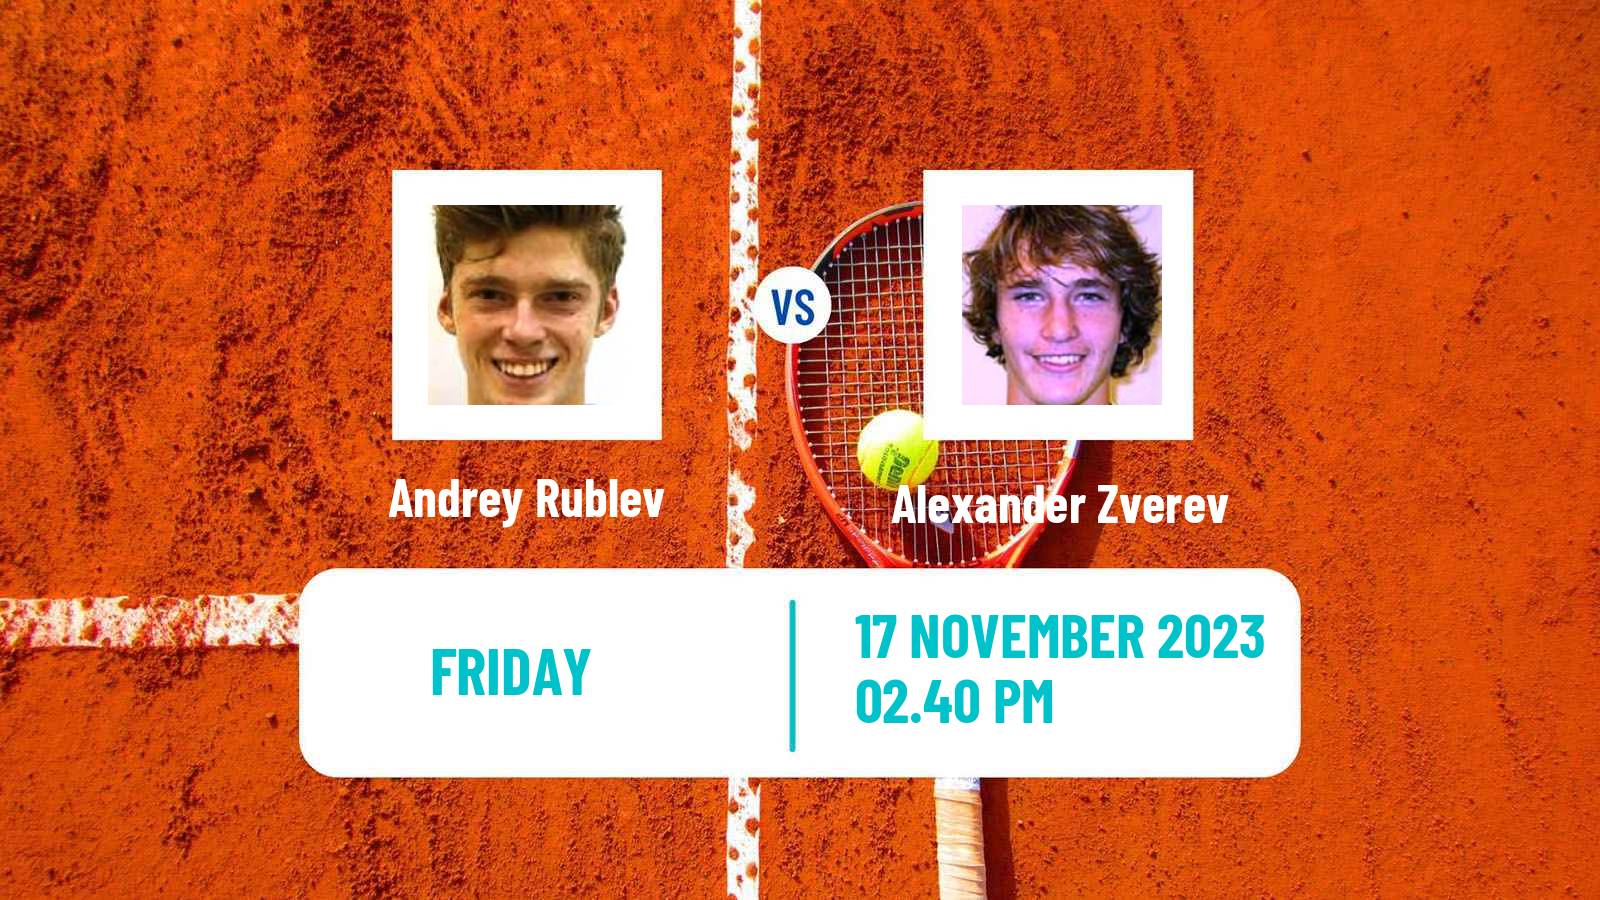 Tennis ATP World Tour Finals Andrey Rublev - Alexander Zverev